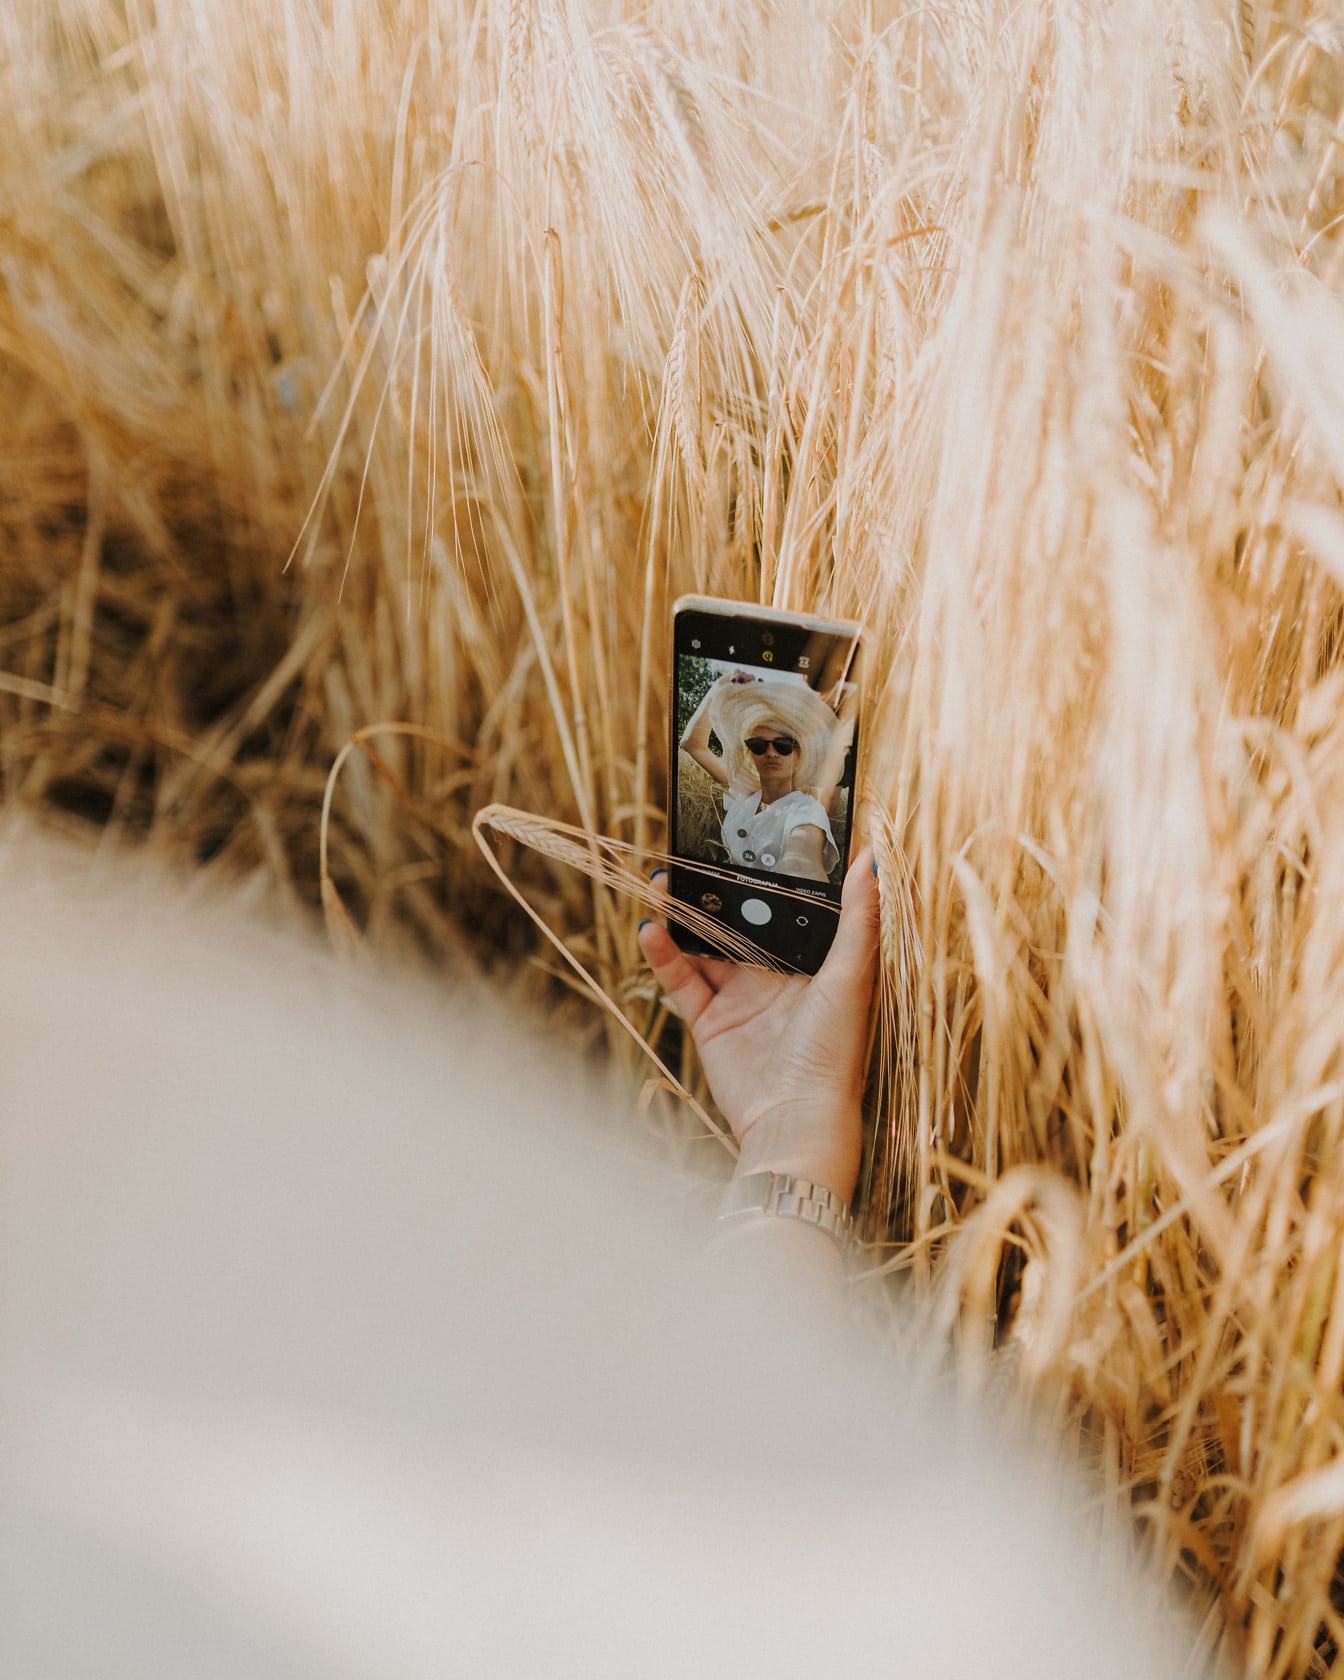 Tóc vàng đội mũ rơm chụp ảnh selfie bằng điện thoại di động trong lúa mì